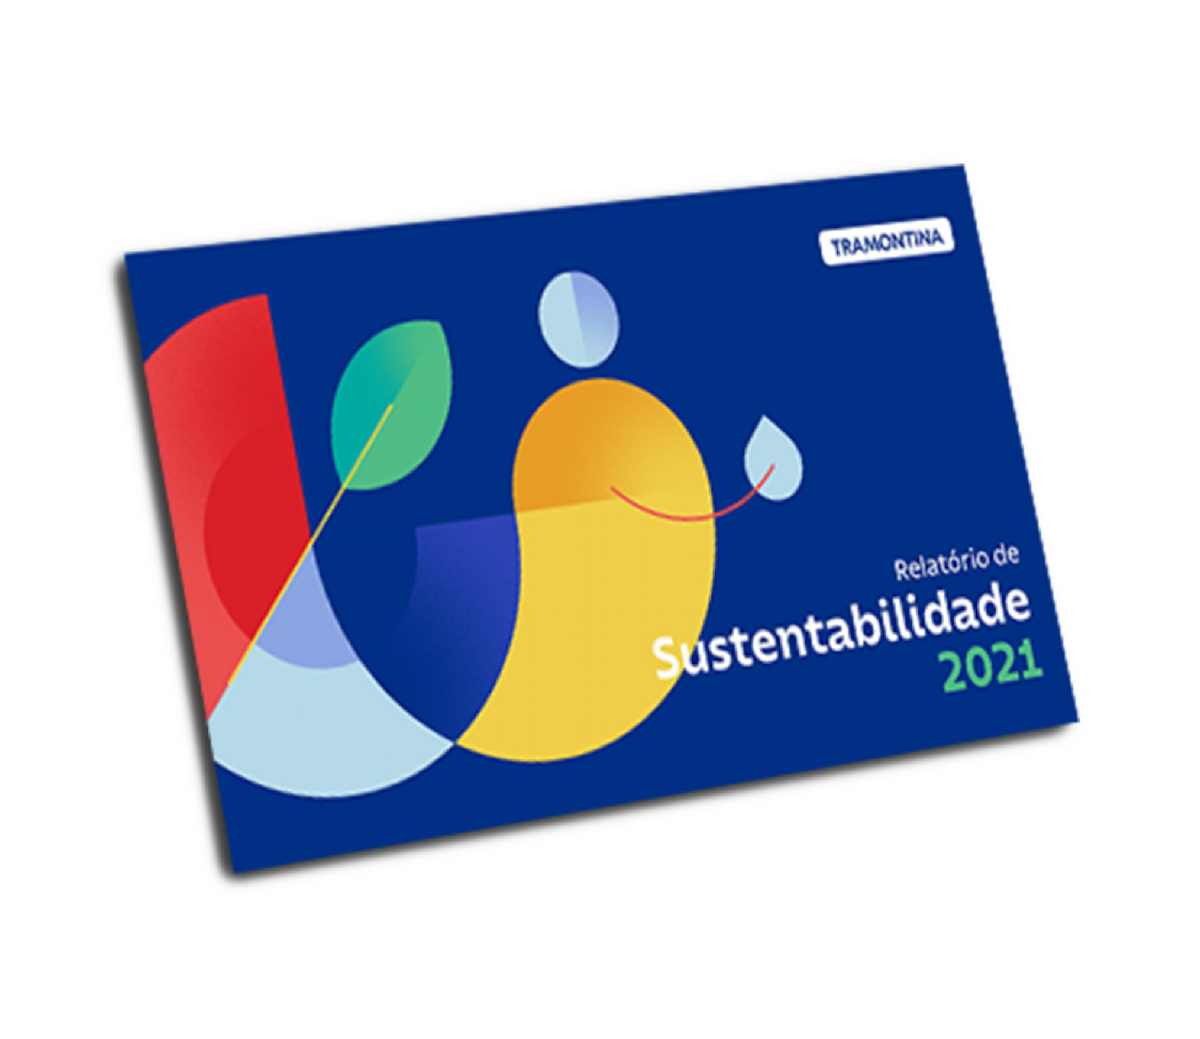 Manual com fundo azul e detalhes em amarelo, escrito "Relatório de Sustentabilidade 2021".